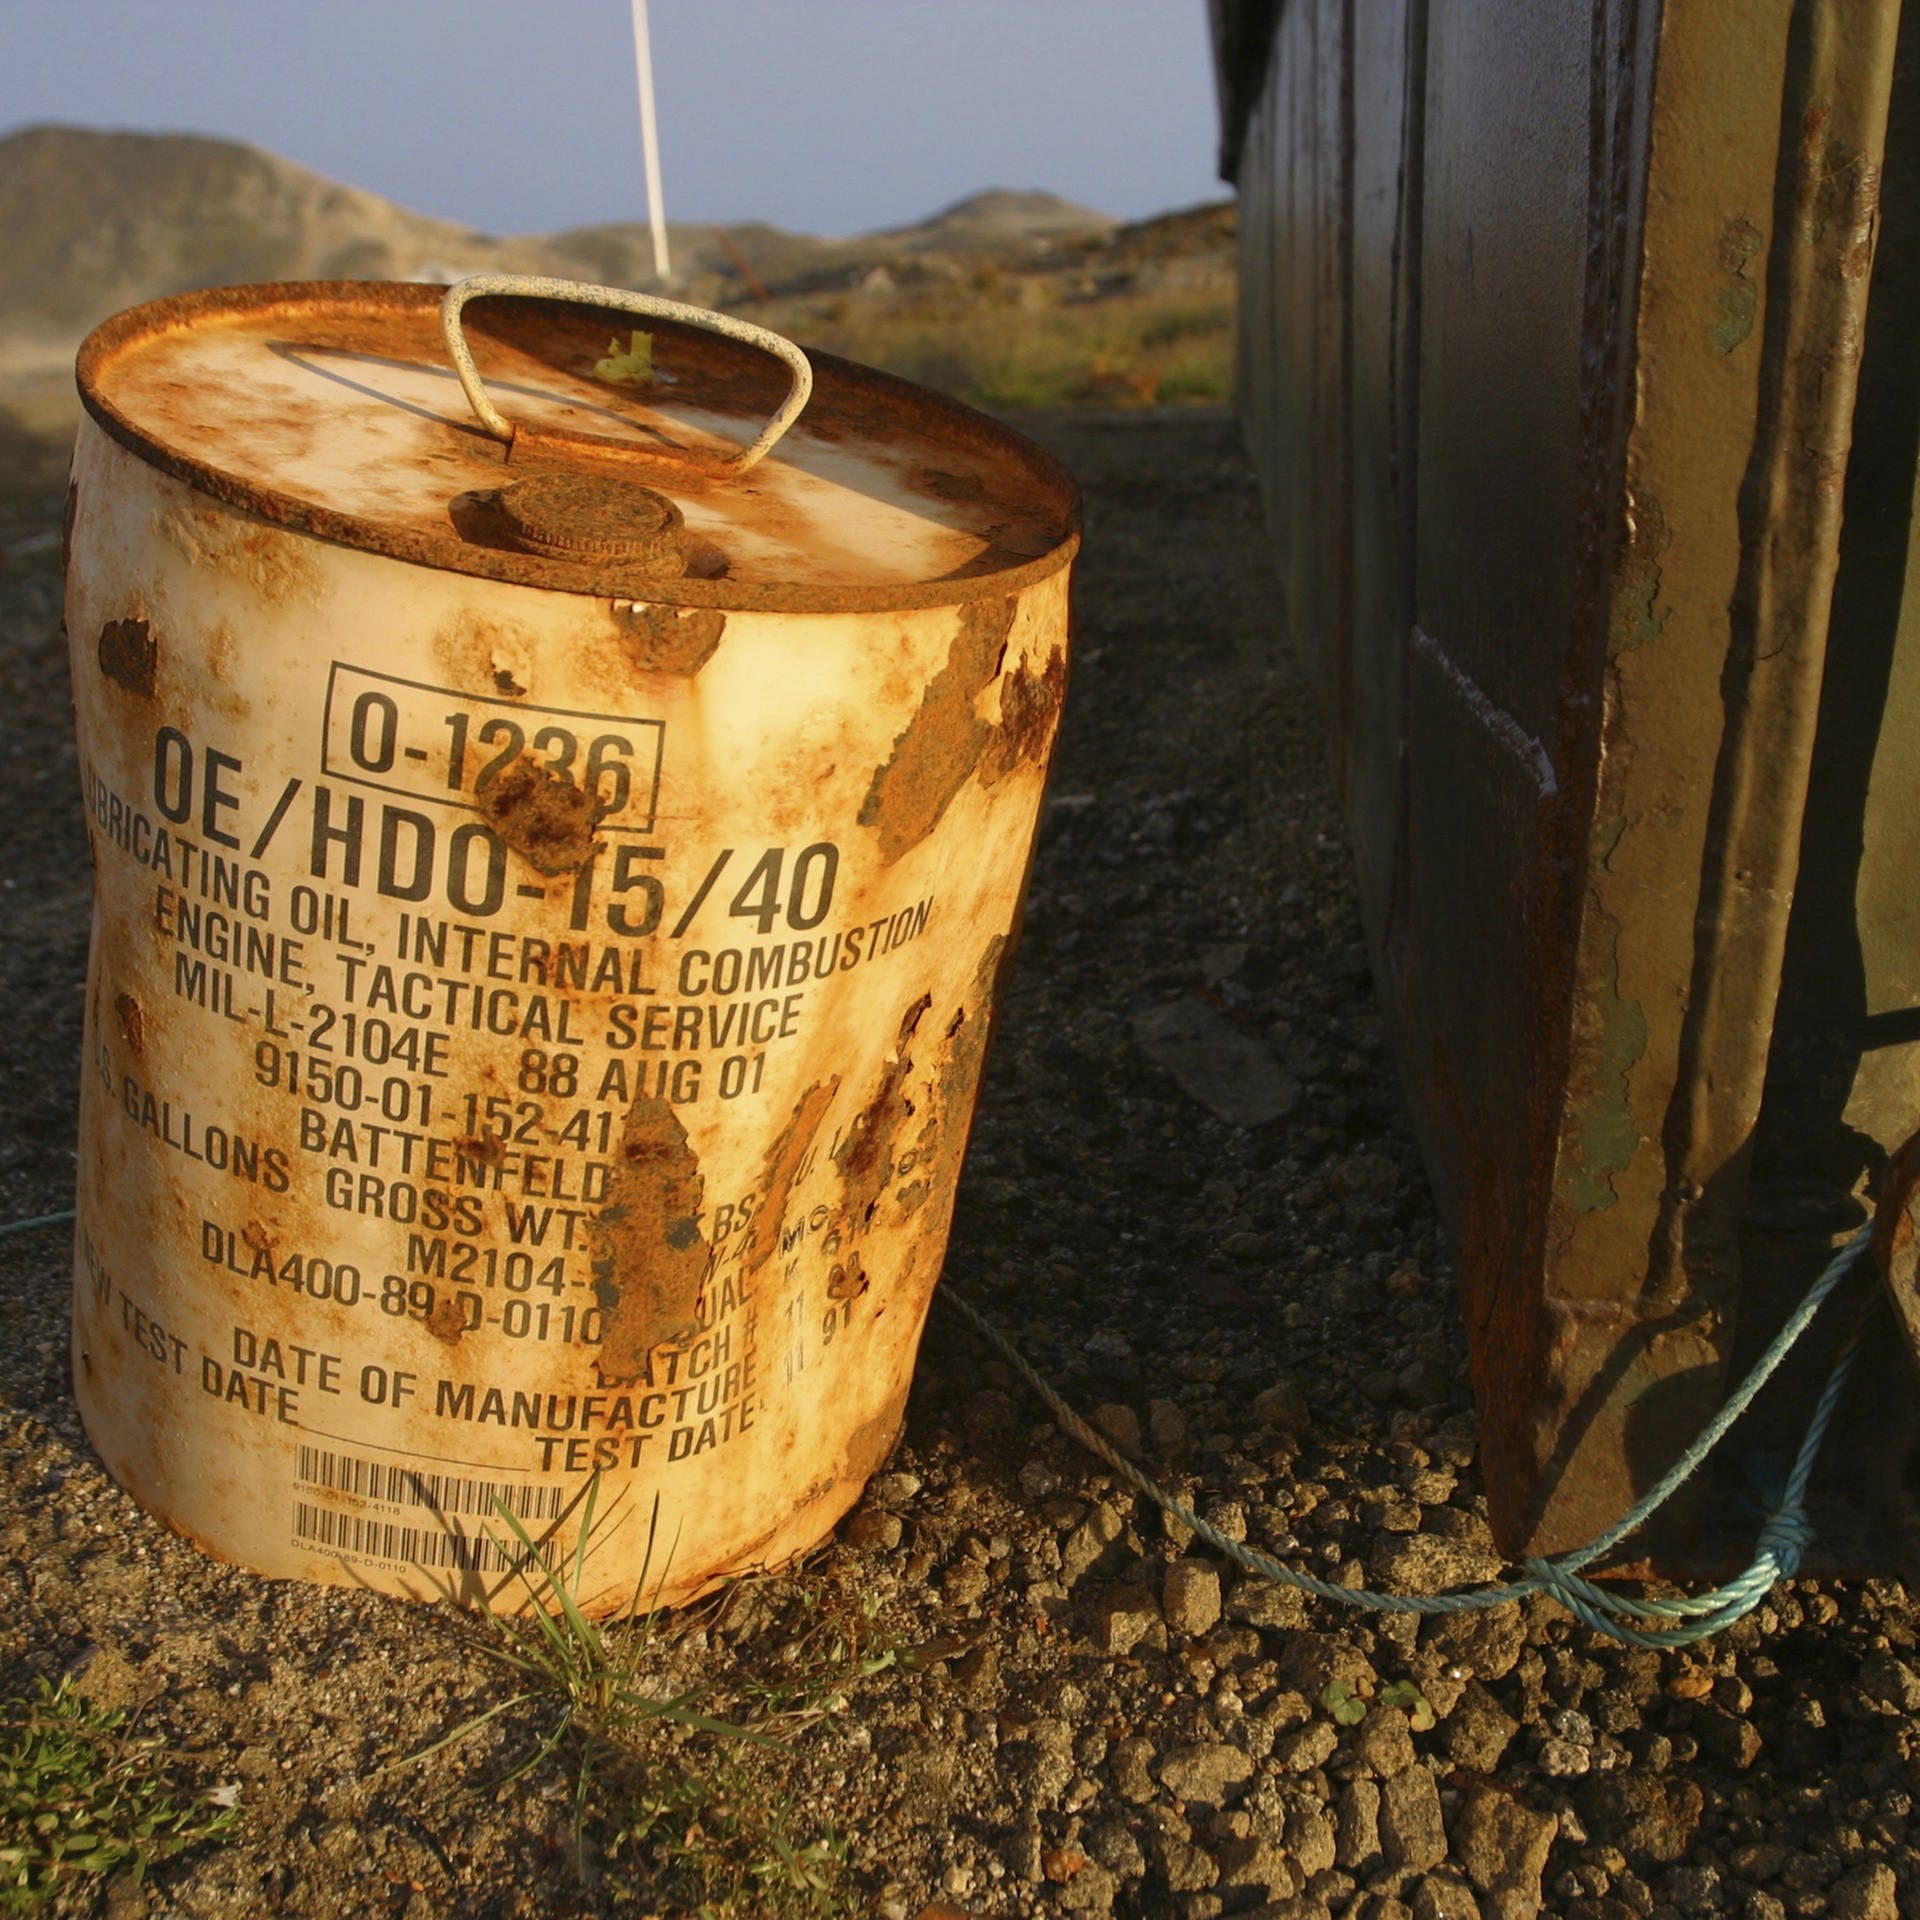 Umweltskandal des Kalten Krieges – Camp Century in Grönland